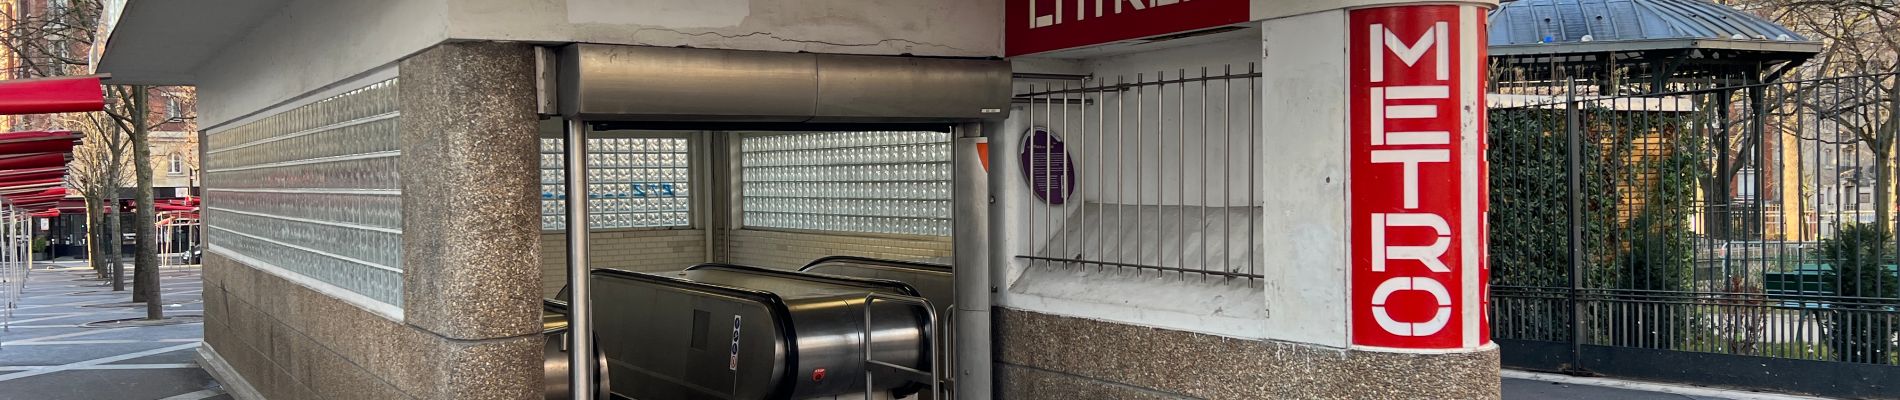 Point d'intérêt Paris - Metro place des fetes - Photo